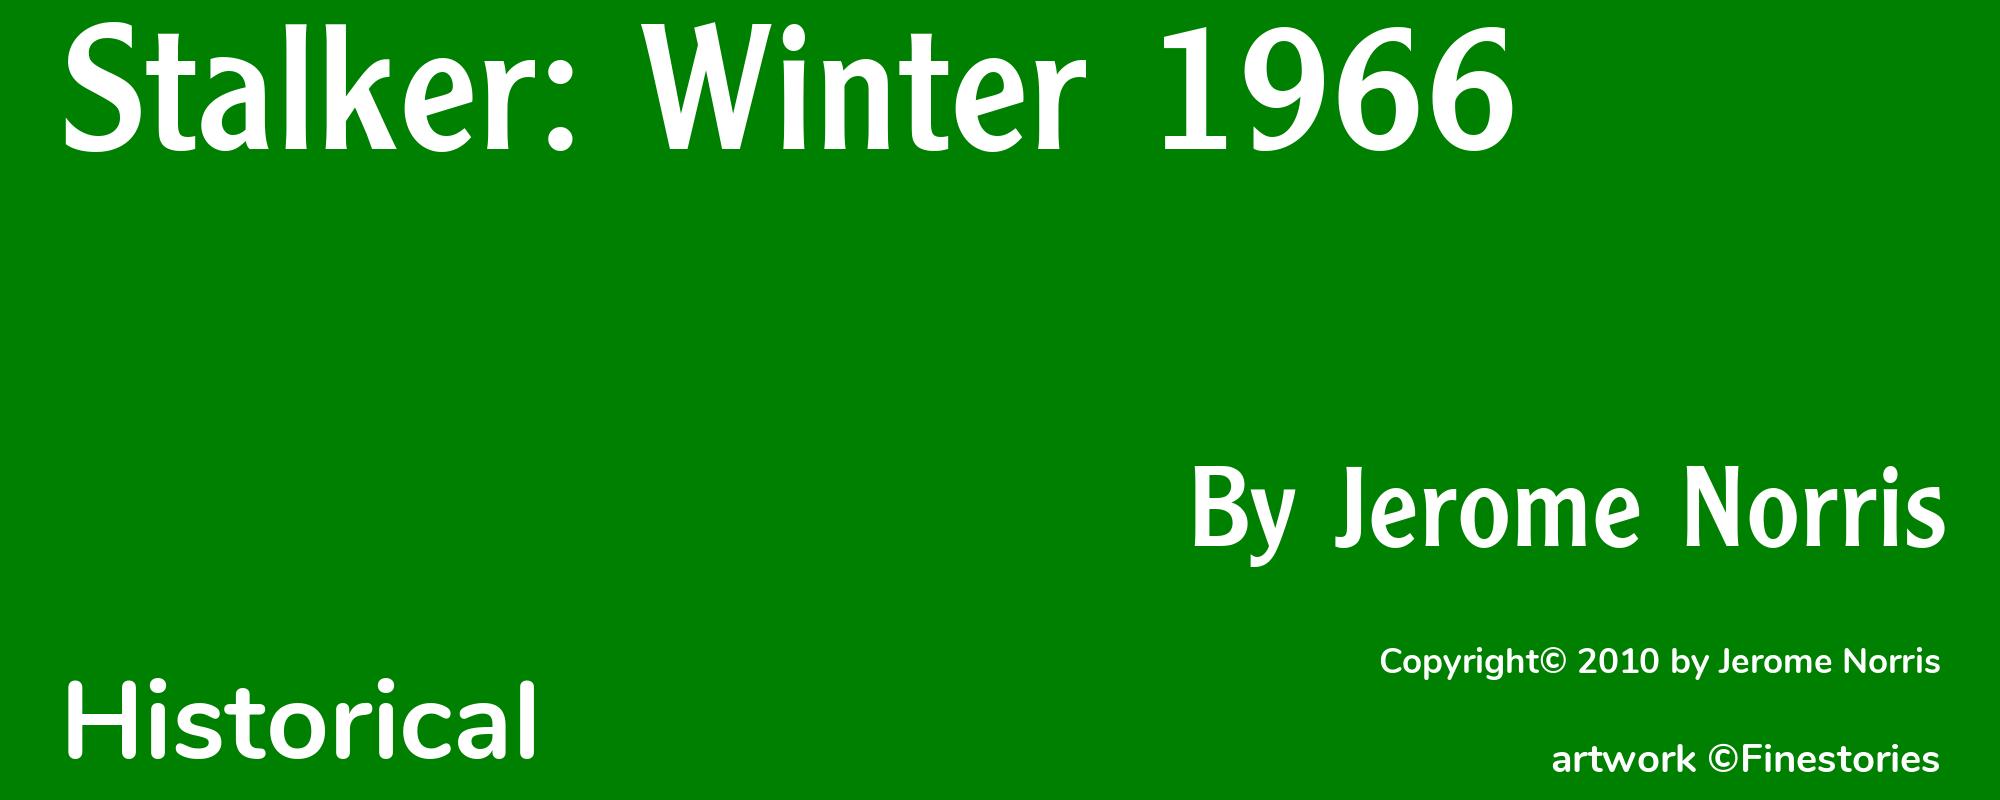 Stalker: Winter 1966 - Cover